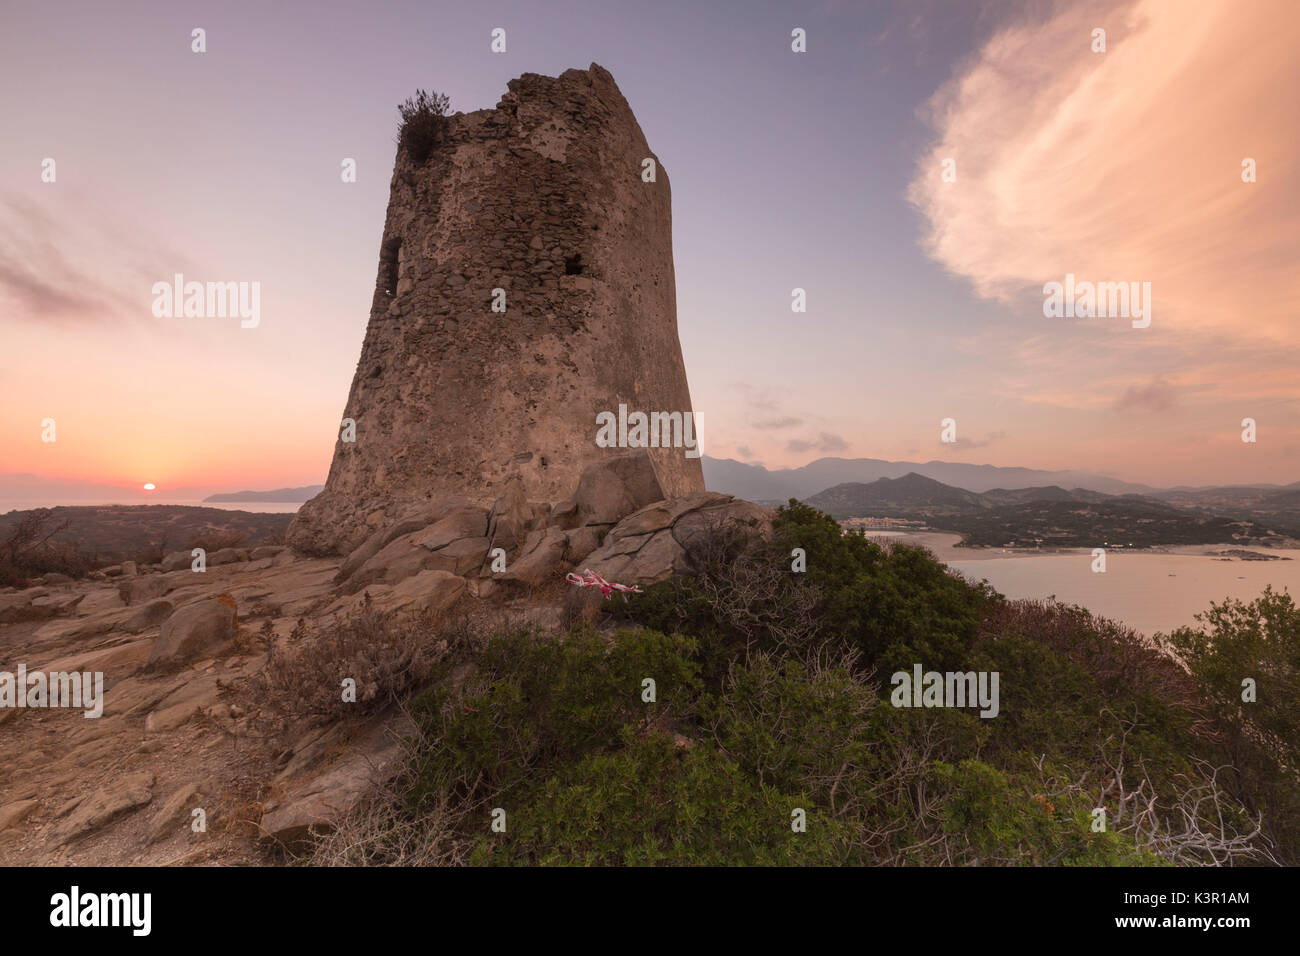 Sonnenuntergang auf dem steinernen Turm mit Blick auf die Bucht Porto Giunco Villasimius Cagliari Sardinien Italien Europa Stockfoto